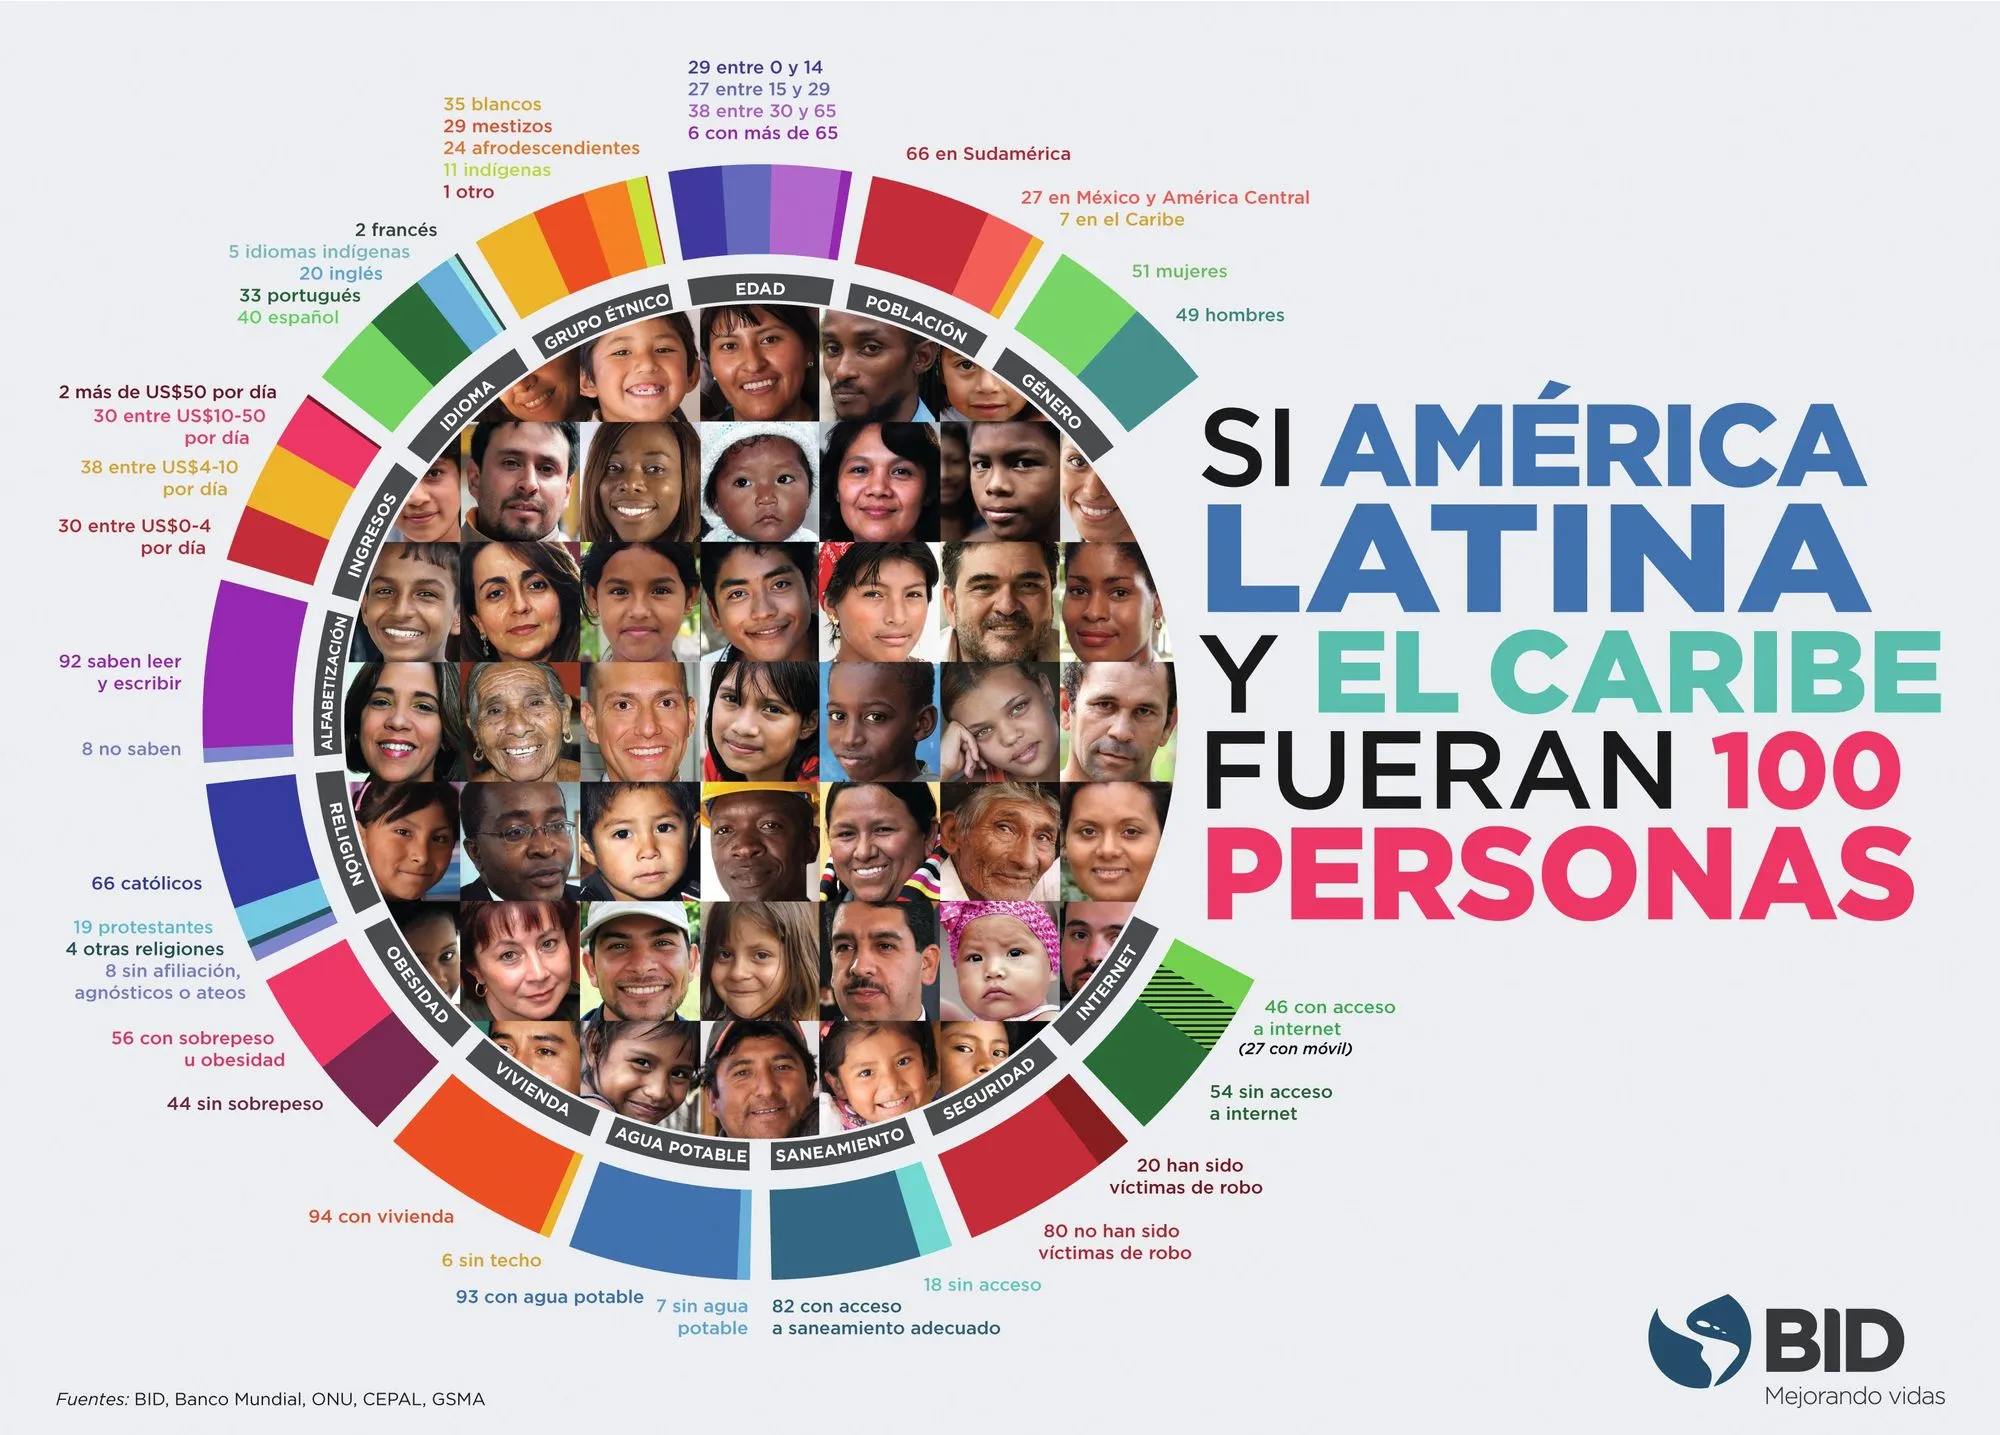 «Si América Latina y el Caribe fueran 100 personas», campaña del Banco Interamericano de Desarrollo, 2016.